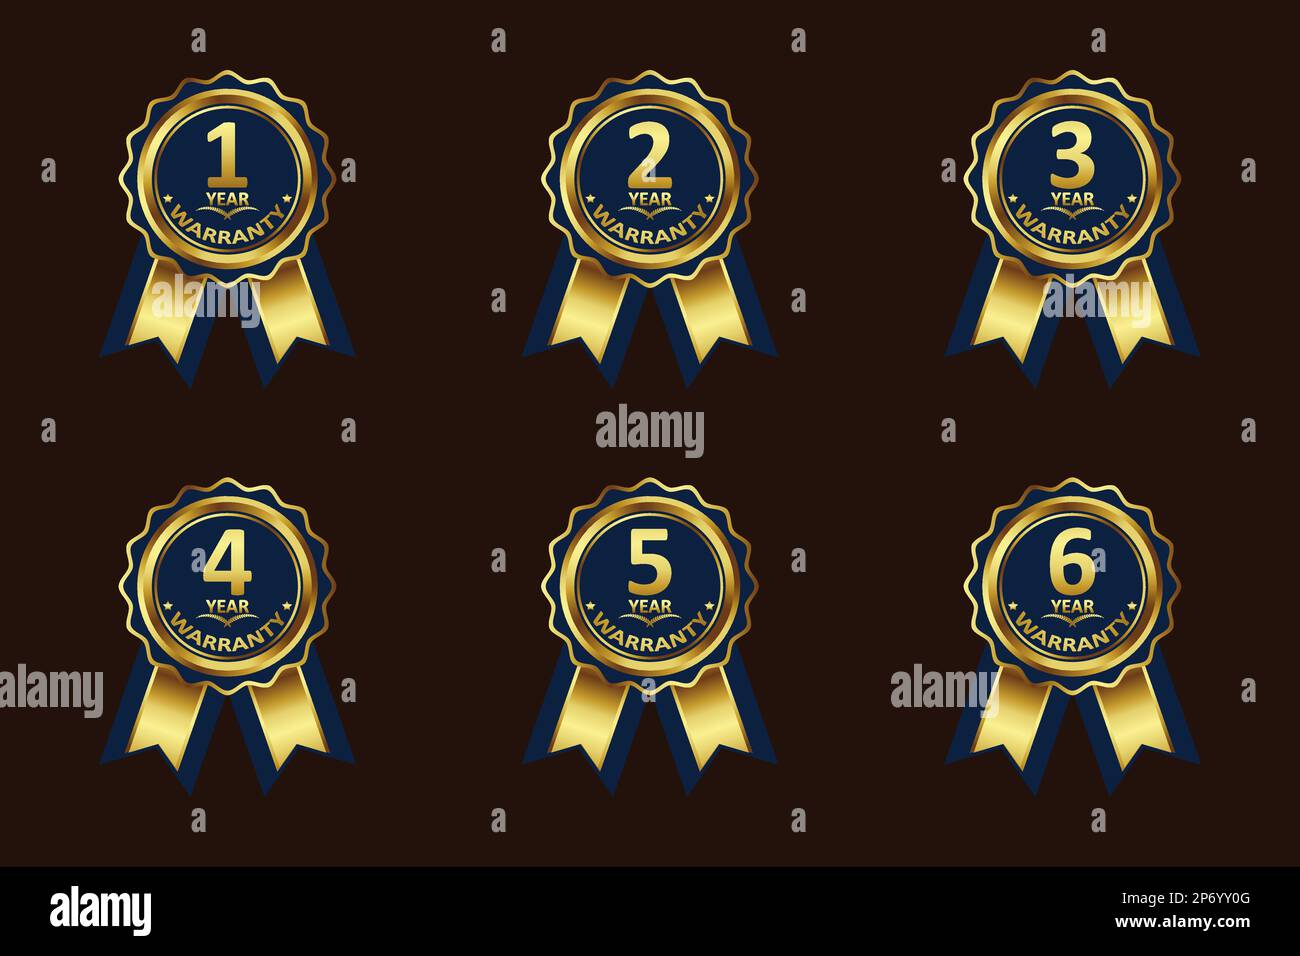 Gold Color Warranty Badge Elementesammlung für verschiedene Jahre, mit Premium-Farben, Siegeln, Medaillen, Abschirmungen, Abzeichen, Schriftrollen und Ornamente Stock Vektor